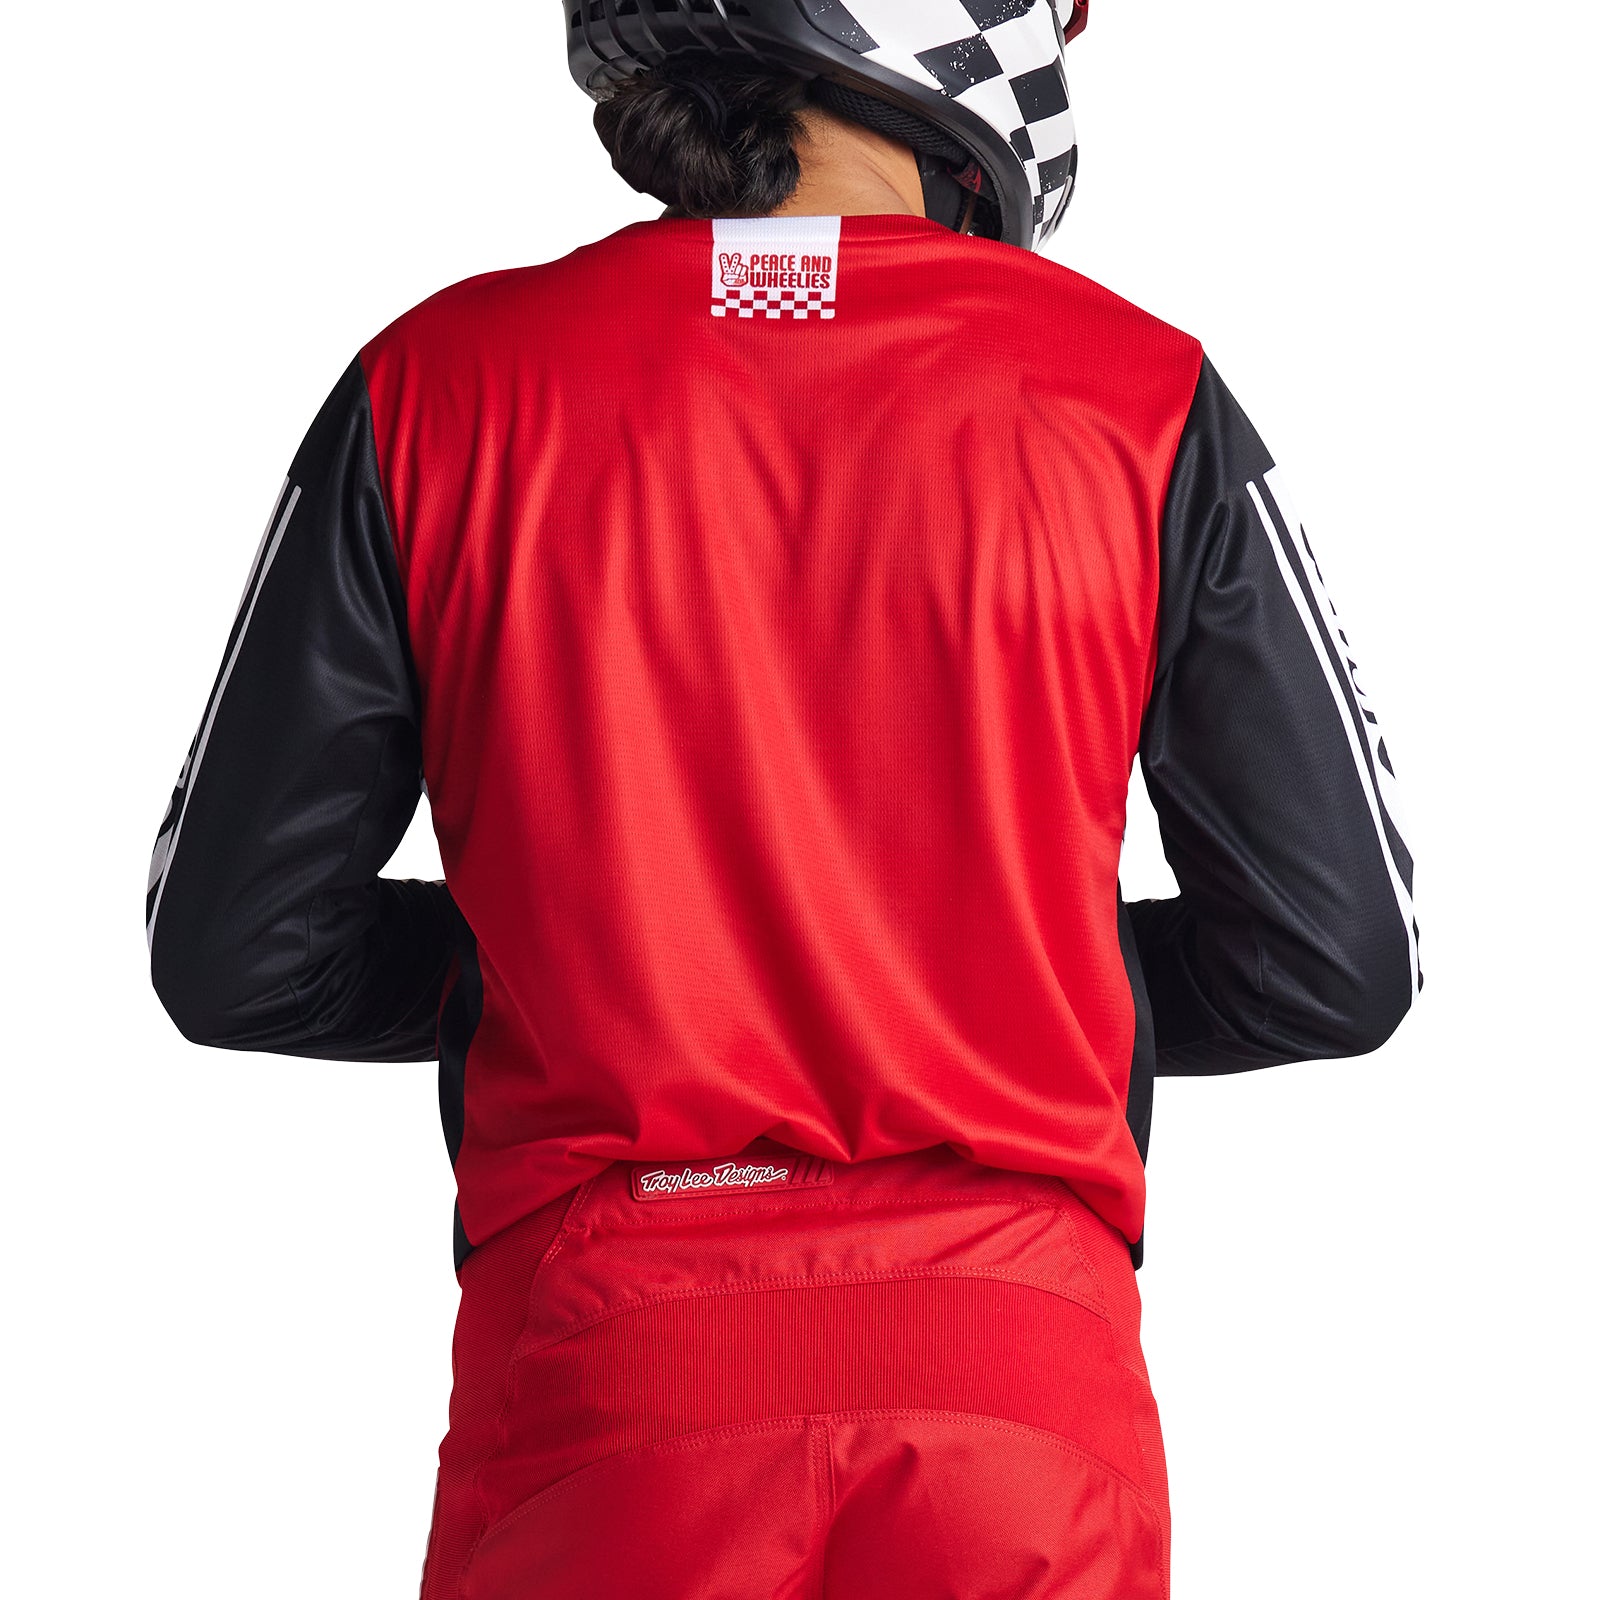 GP Air Pant Warped Red / Black – Troy Lee Designs Canada